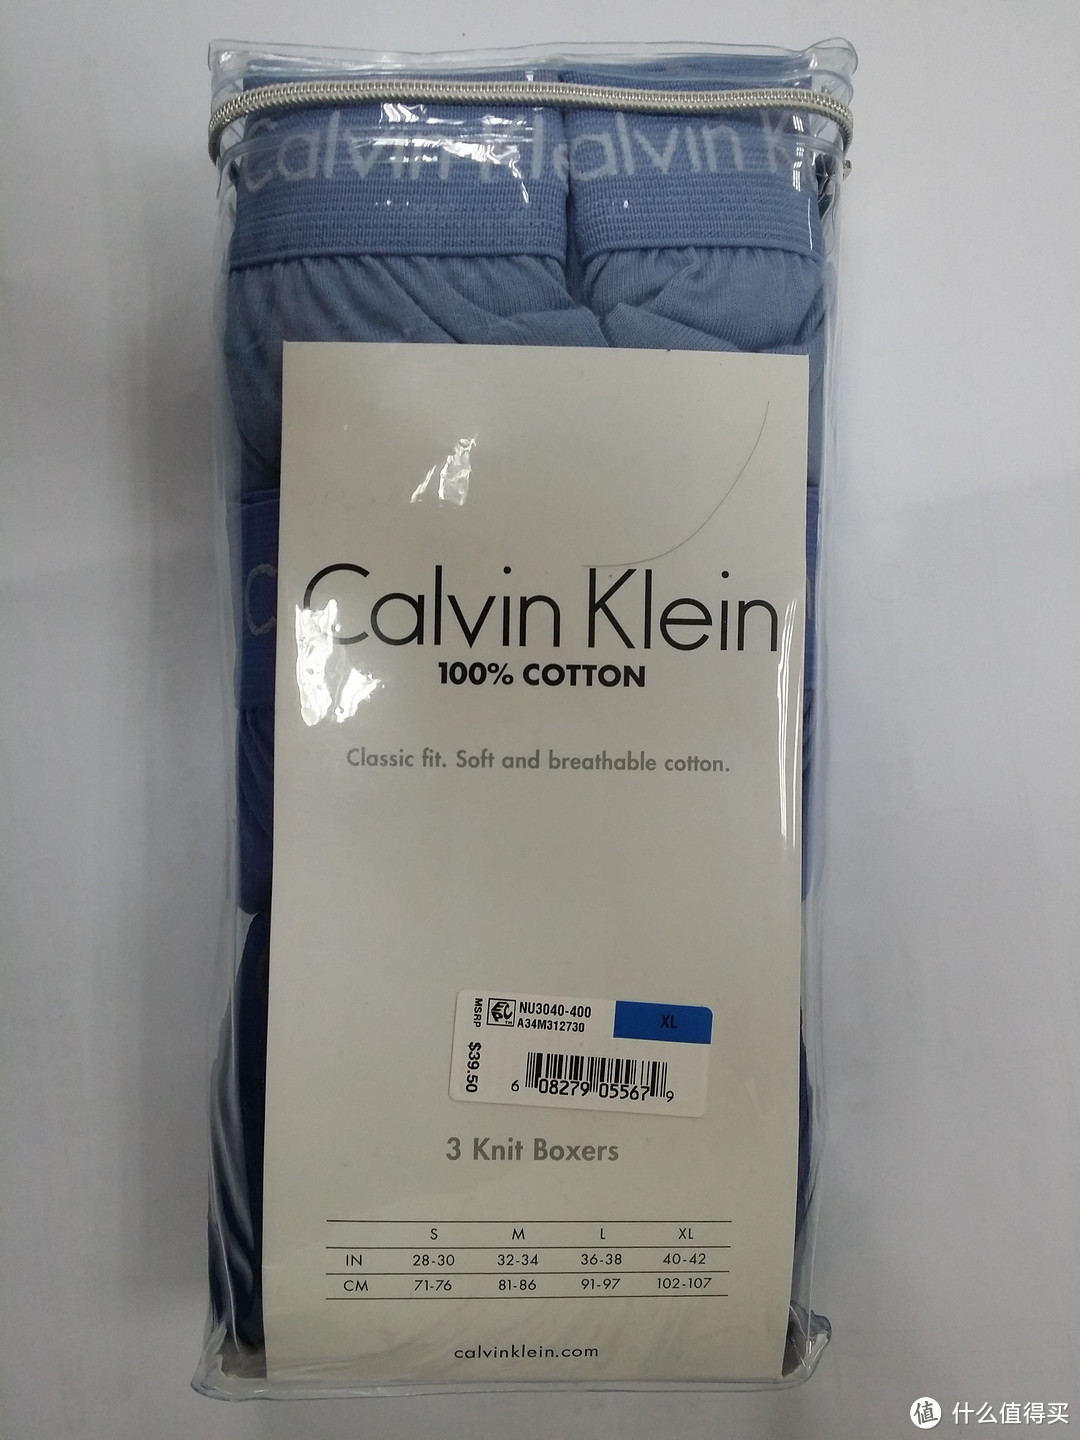 #有货自远方来# Calvin Klein 超大内裤初体验